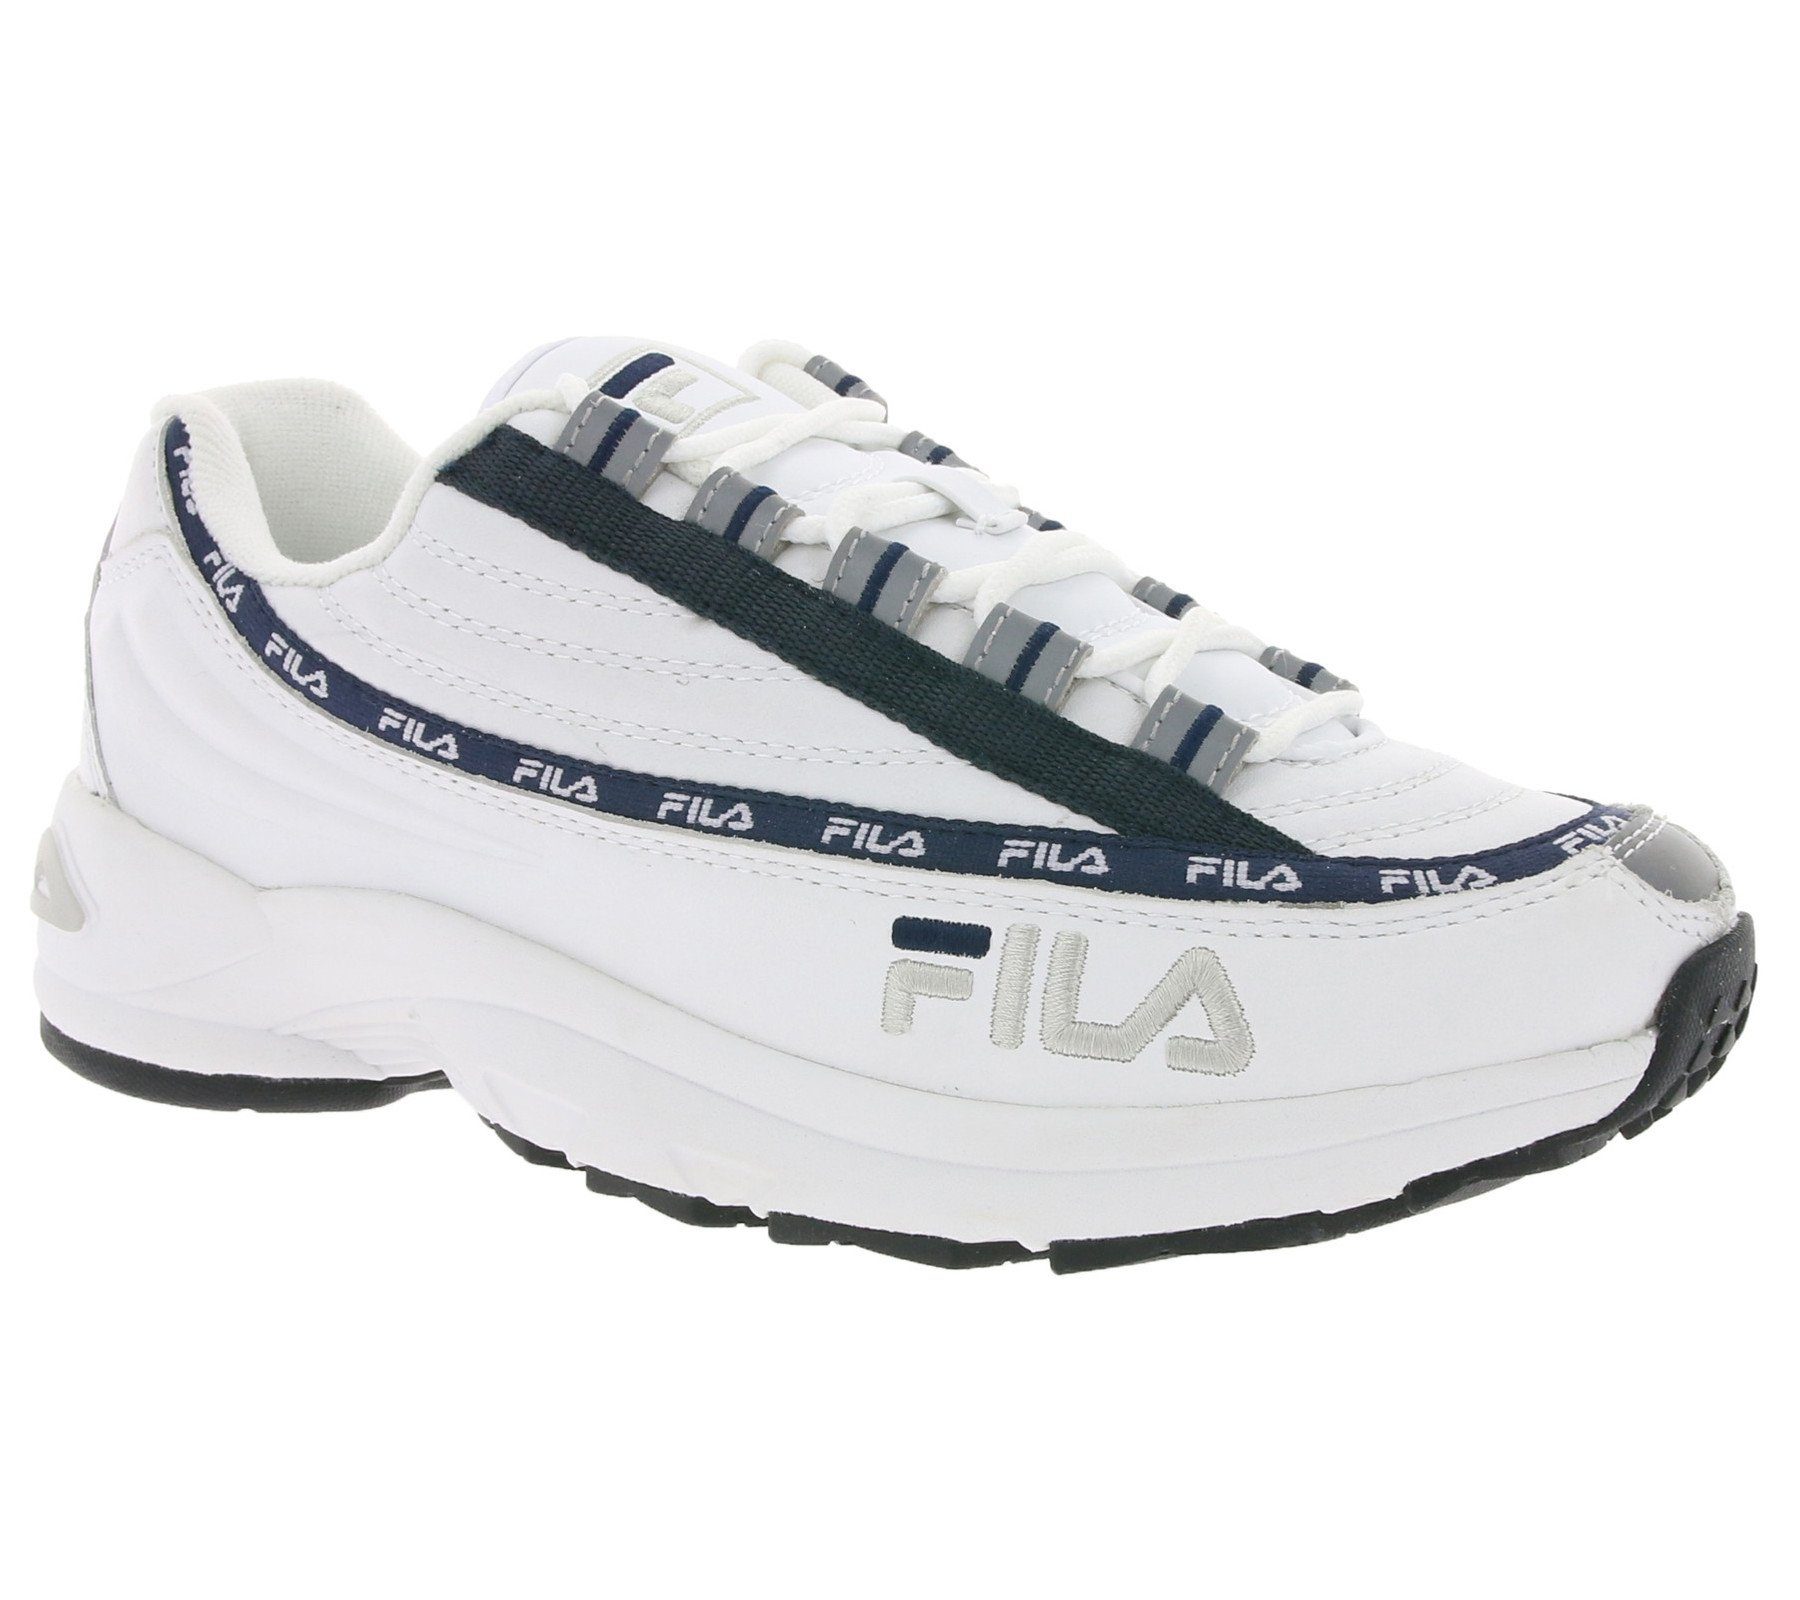 Fila »FILA 90s Turn-Schuhe schlichte Retro-Sneaker DSTR97 L Freizeit-Schuhe  Weiß/Navy« Sneaker online kaufen | OTTO